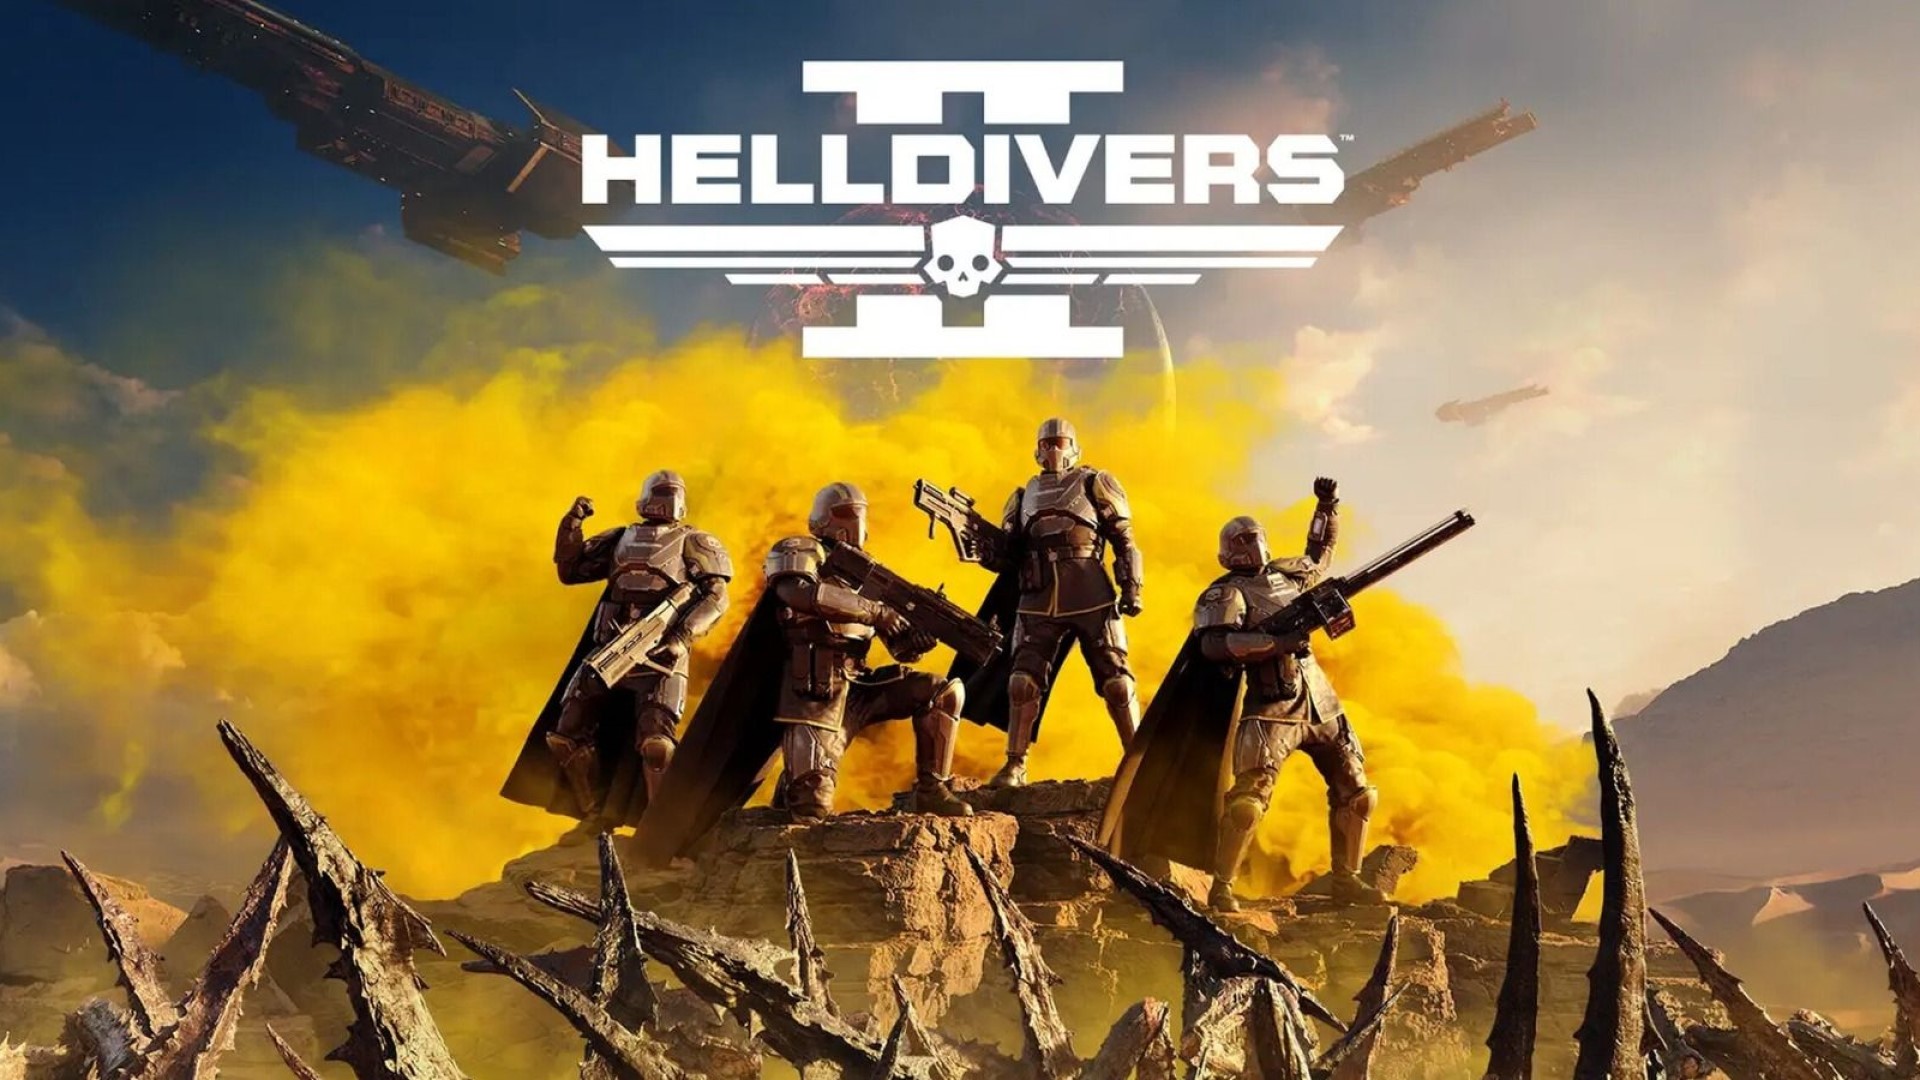 Antalet sålda exemplar av Helldivers 2 har förmodligen ökat till åtta miljoner